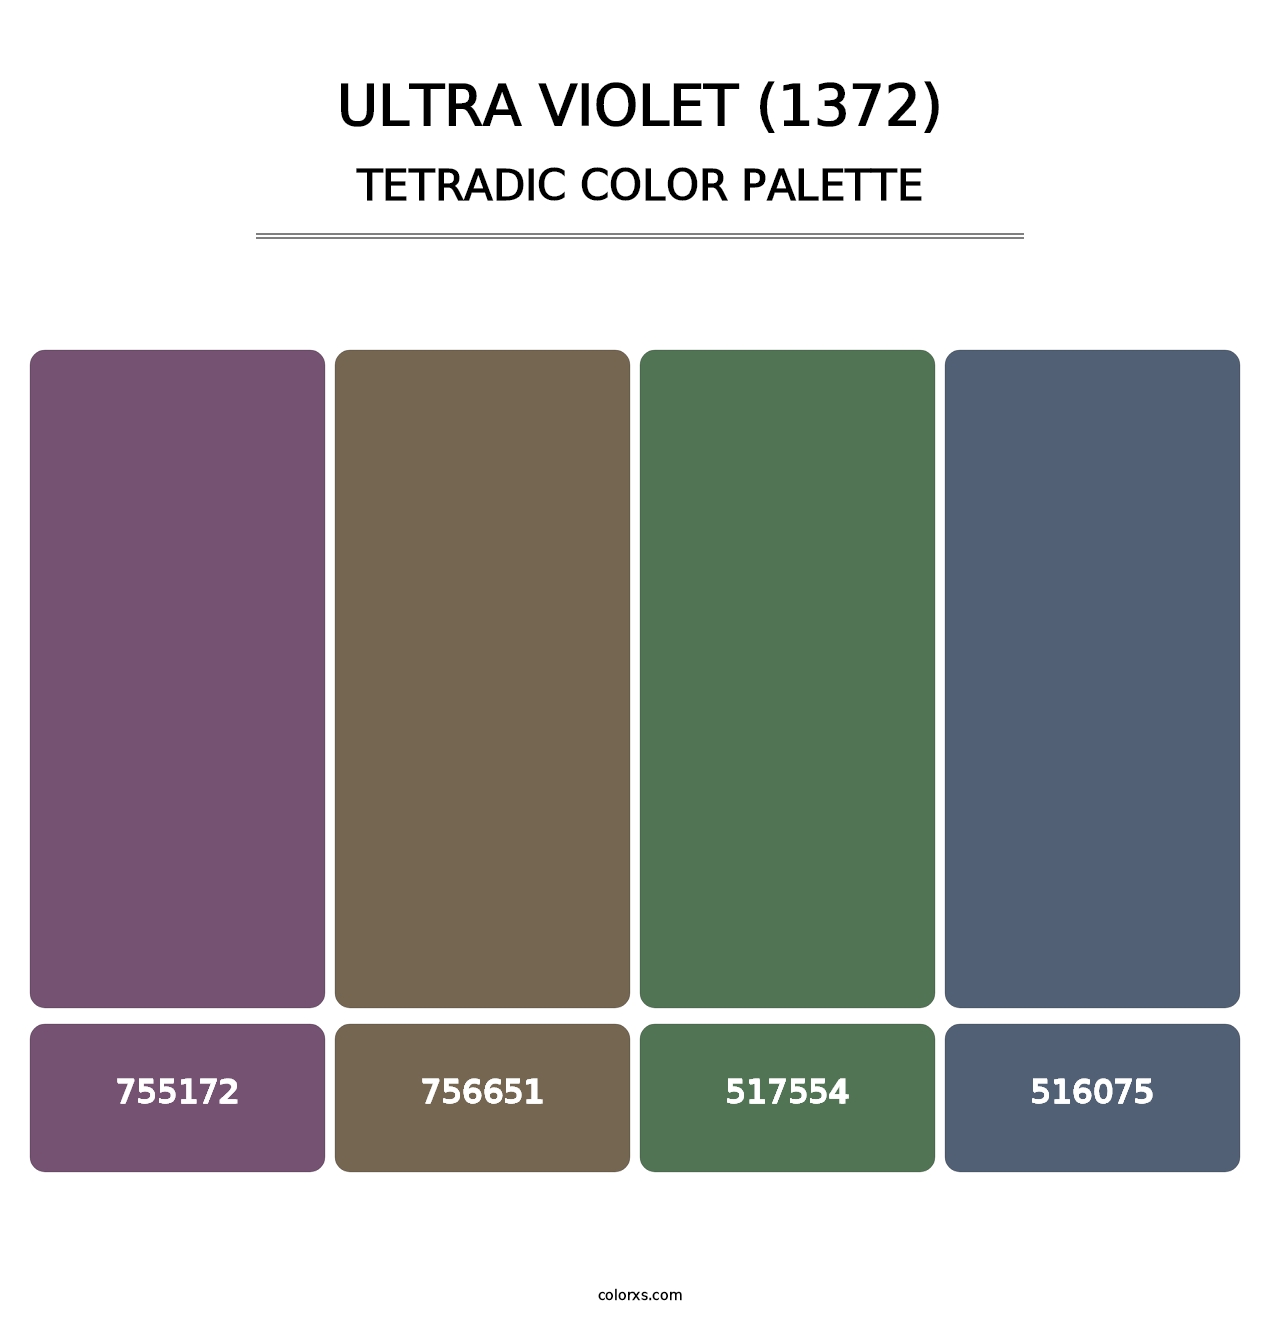 Ultra Violet (1372) - Tetradic Color Palette